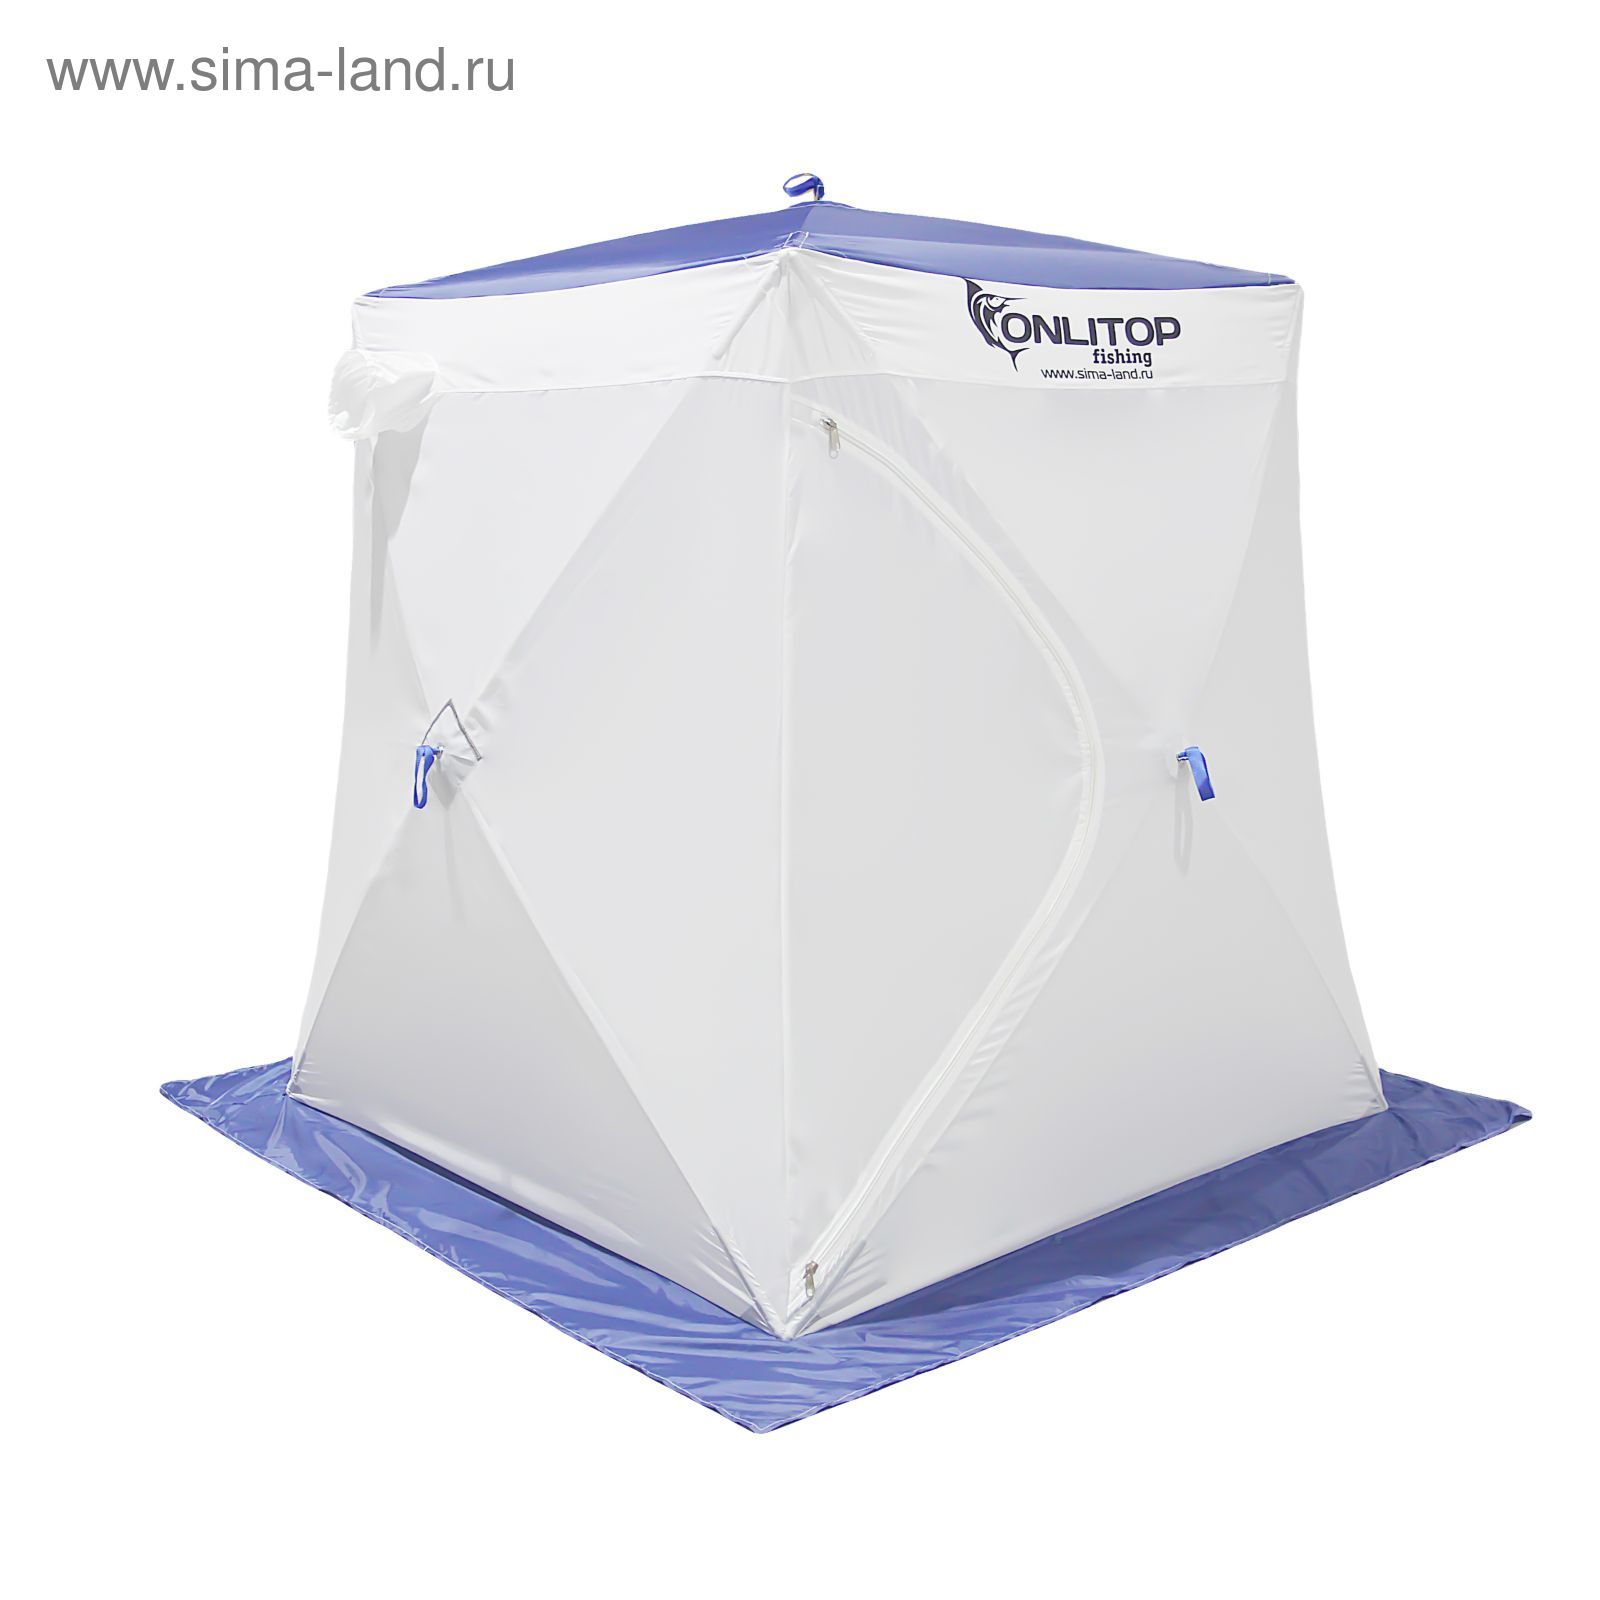 Палатка "Призма Стандарт" 150, 1-слойная, цвет бело-синий